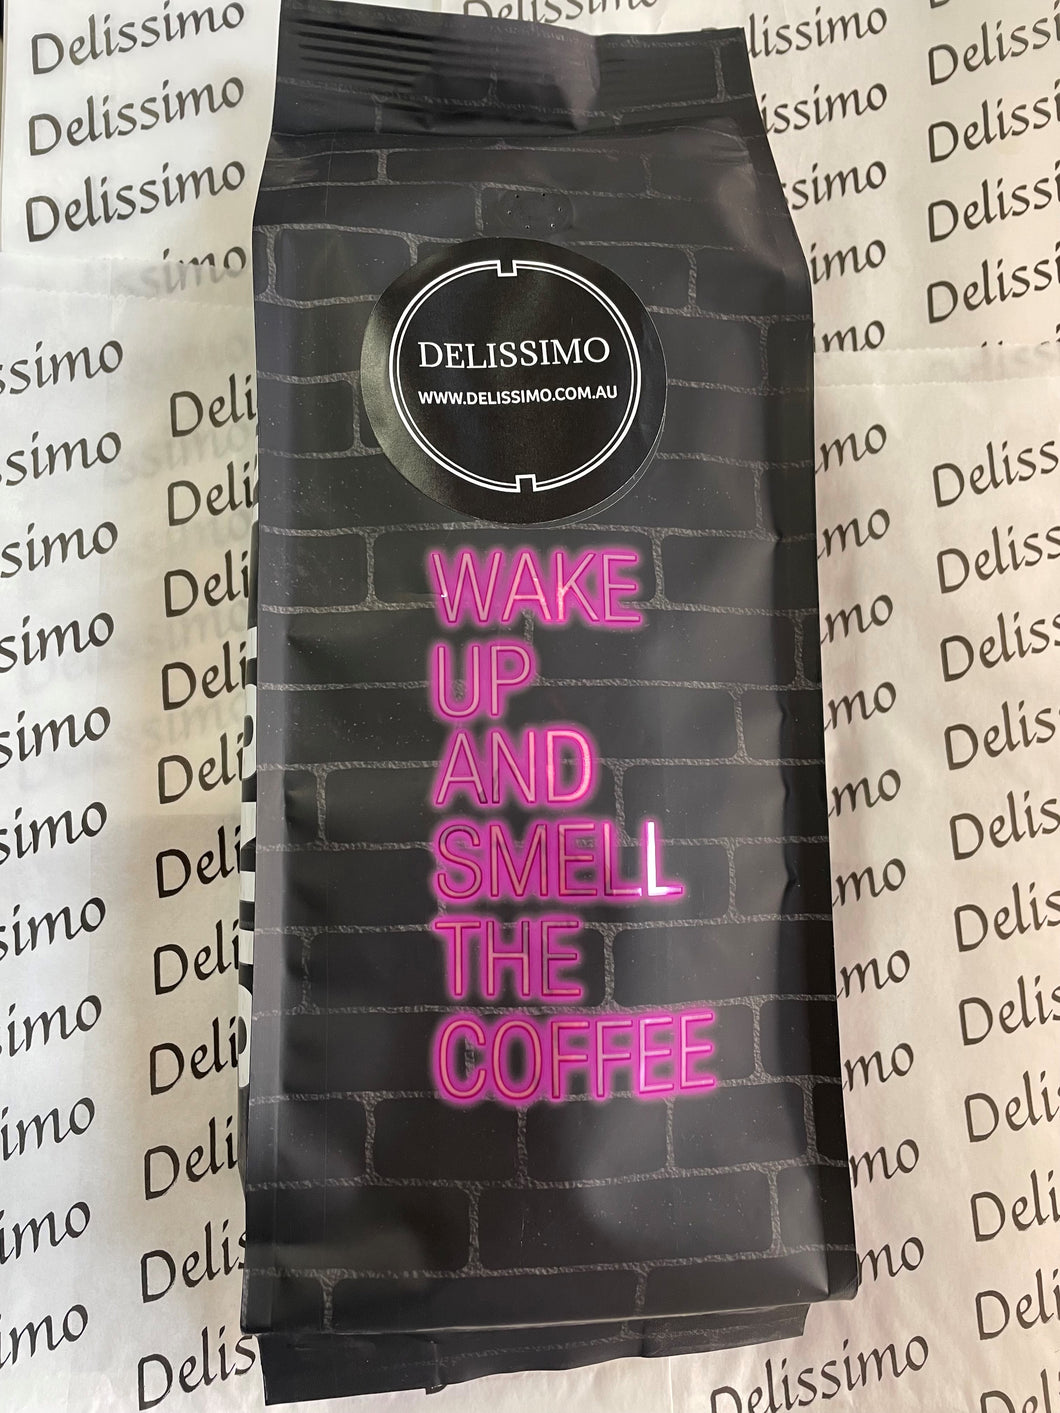 DELISSIMO SUPERIOR ESPRESSO COFFEE BEANS 1KG